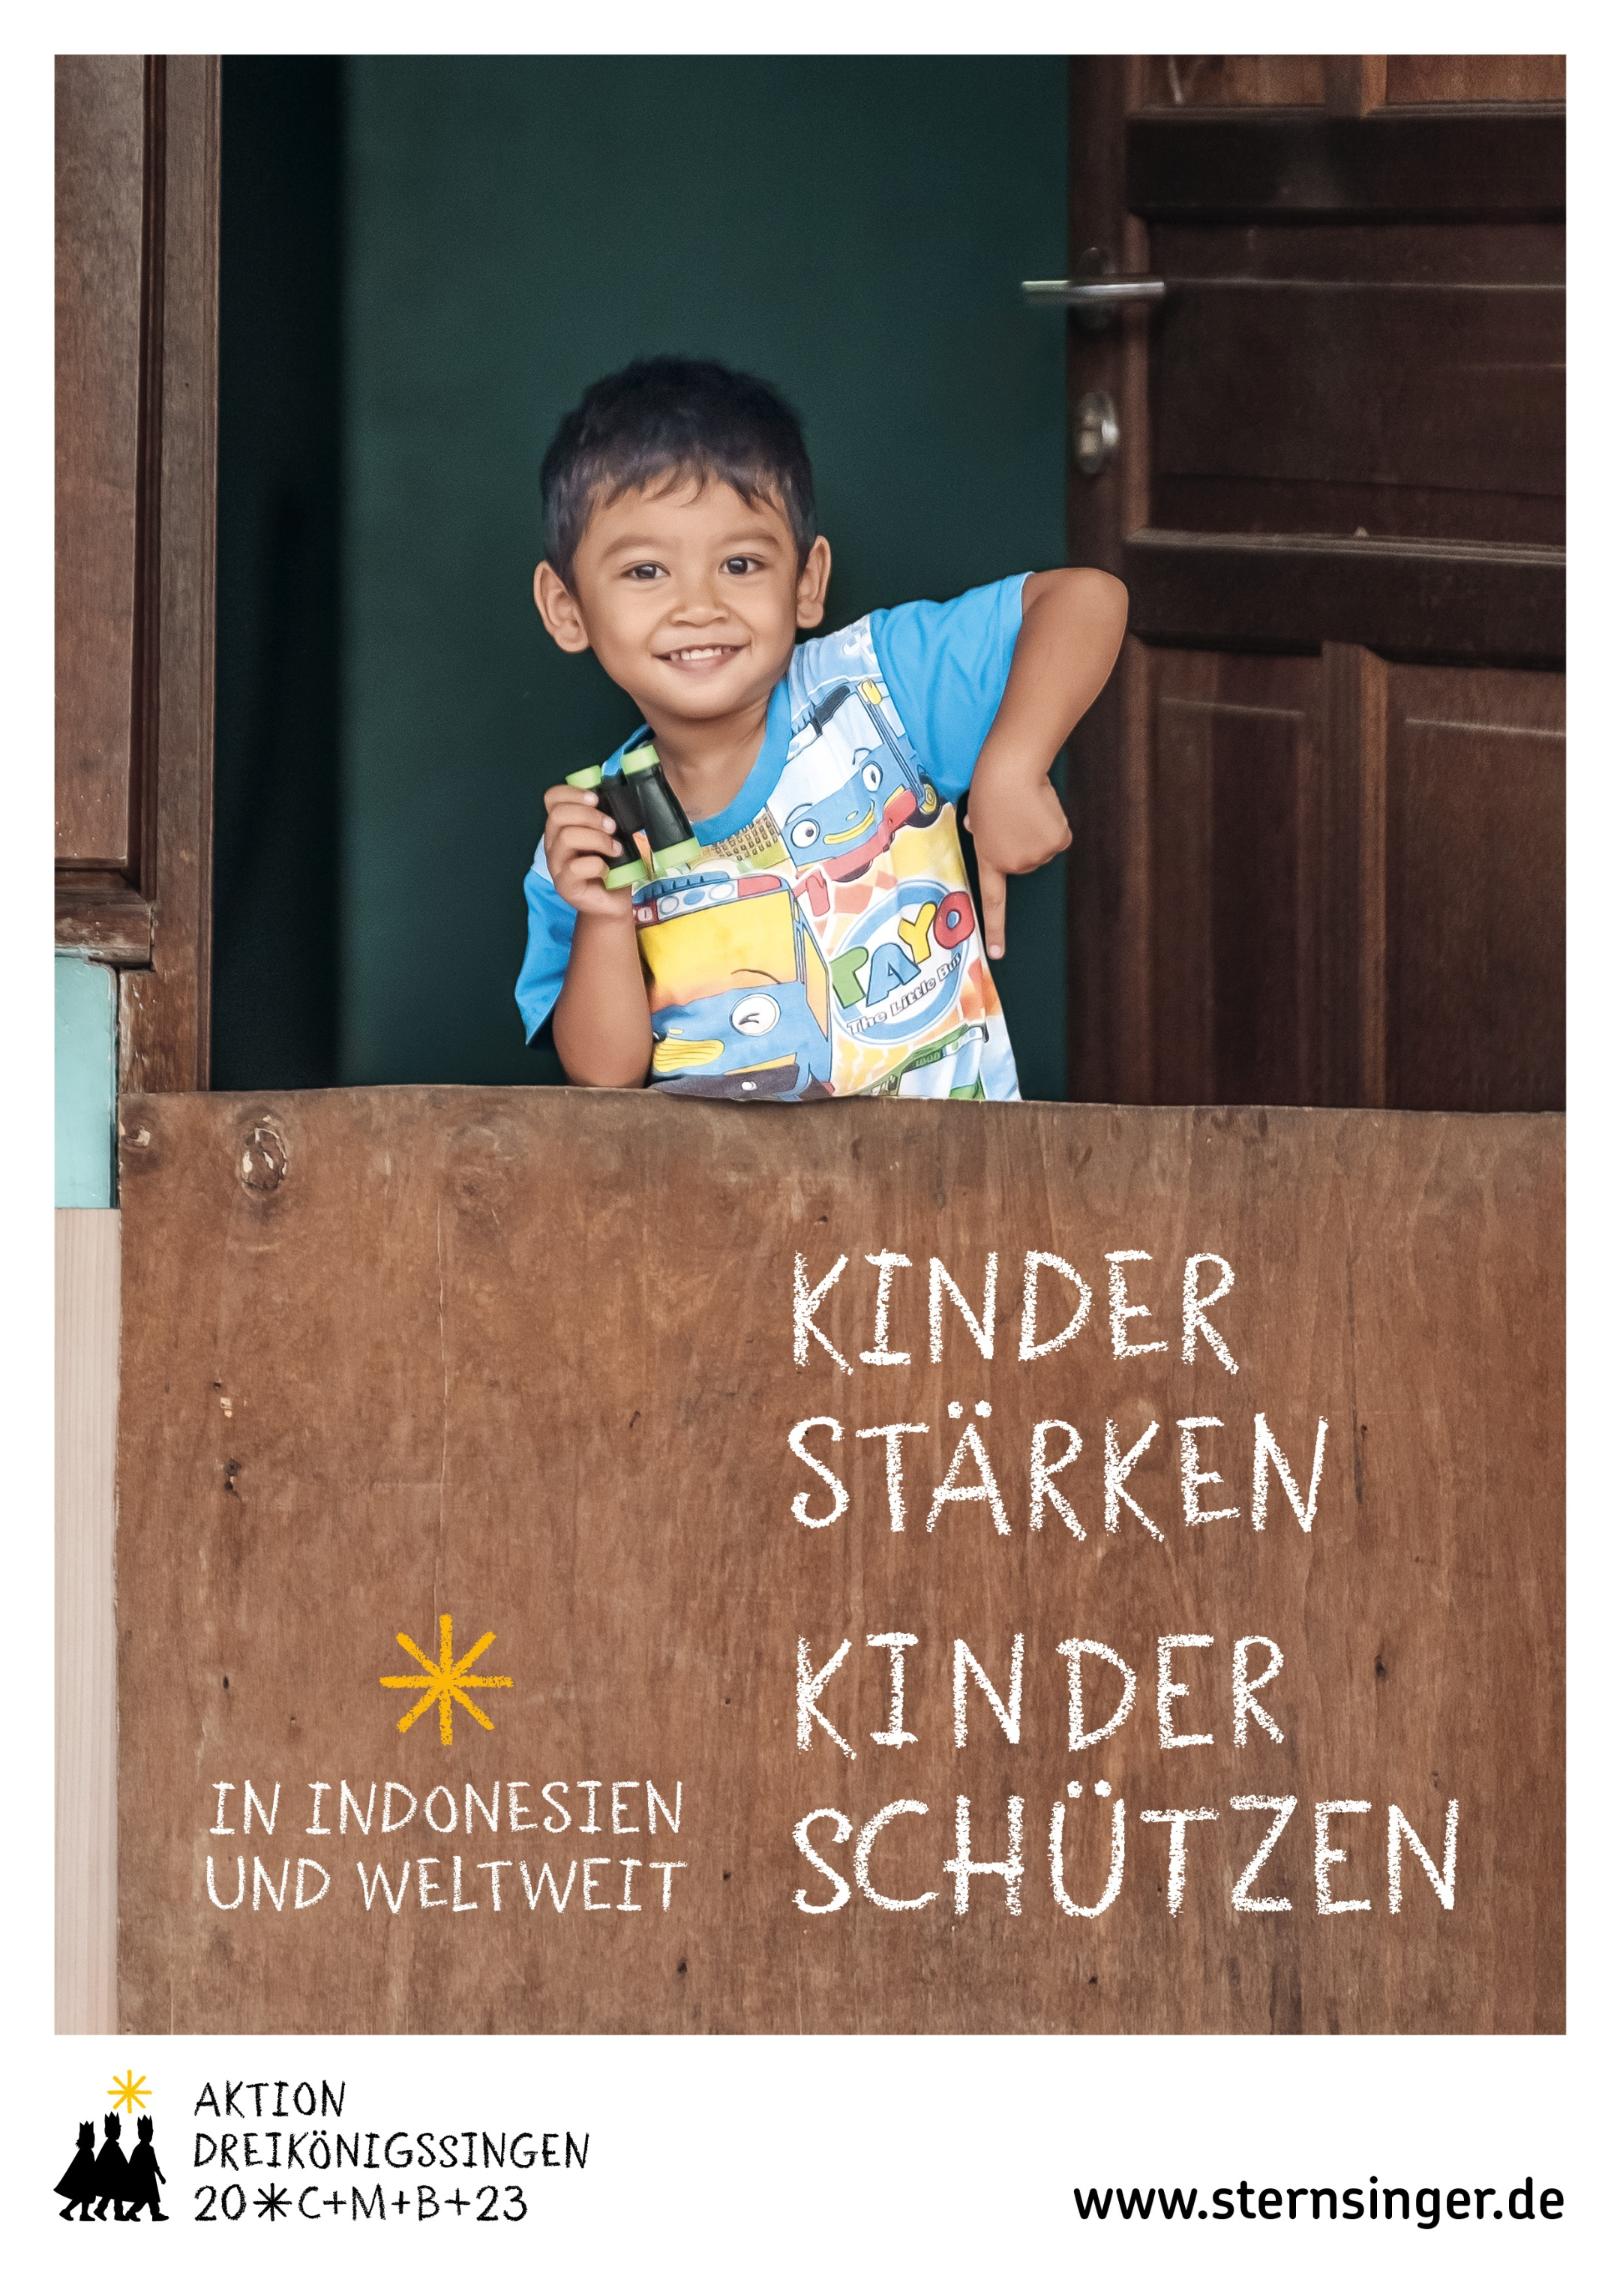 Kinder stärken, Kinder schützen - in Indonesien und weltweit (c) Gemilang Dini Arrasyid / Kindermissionswerk / ich.tv